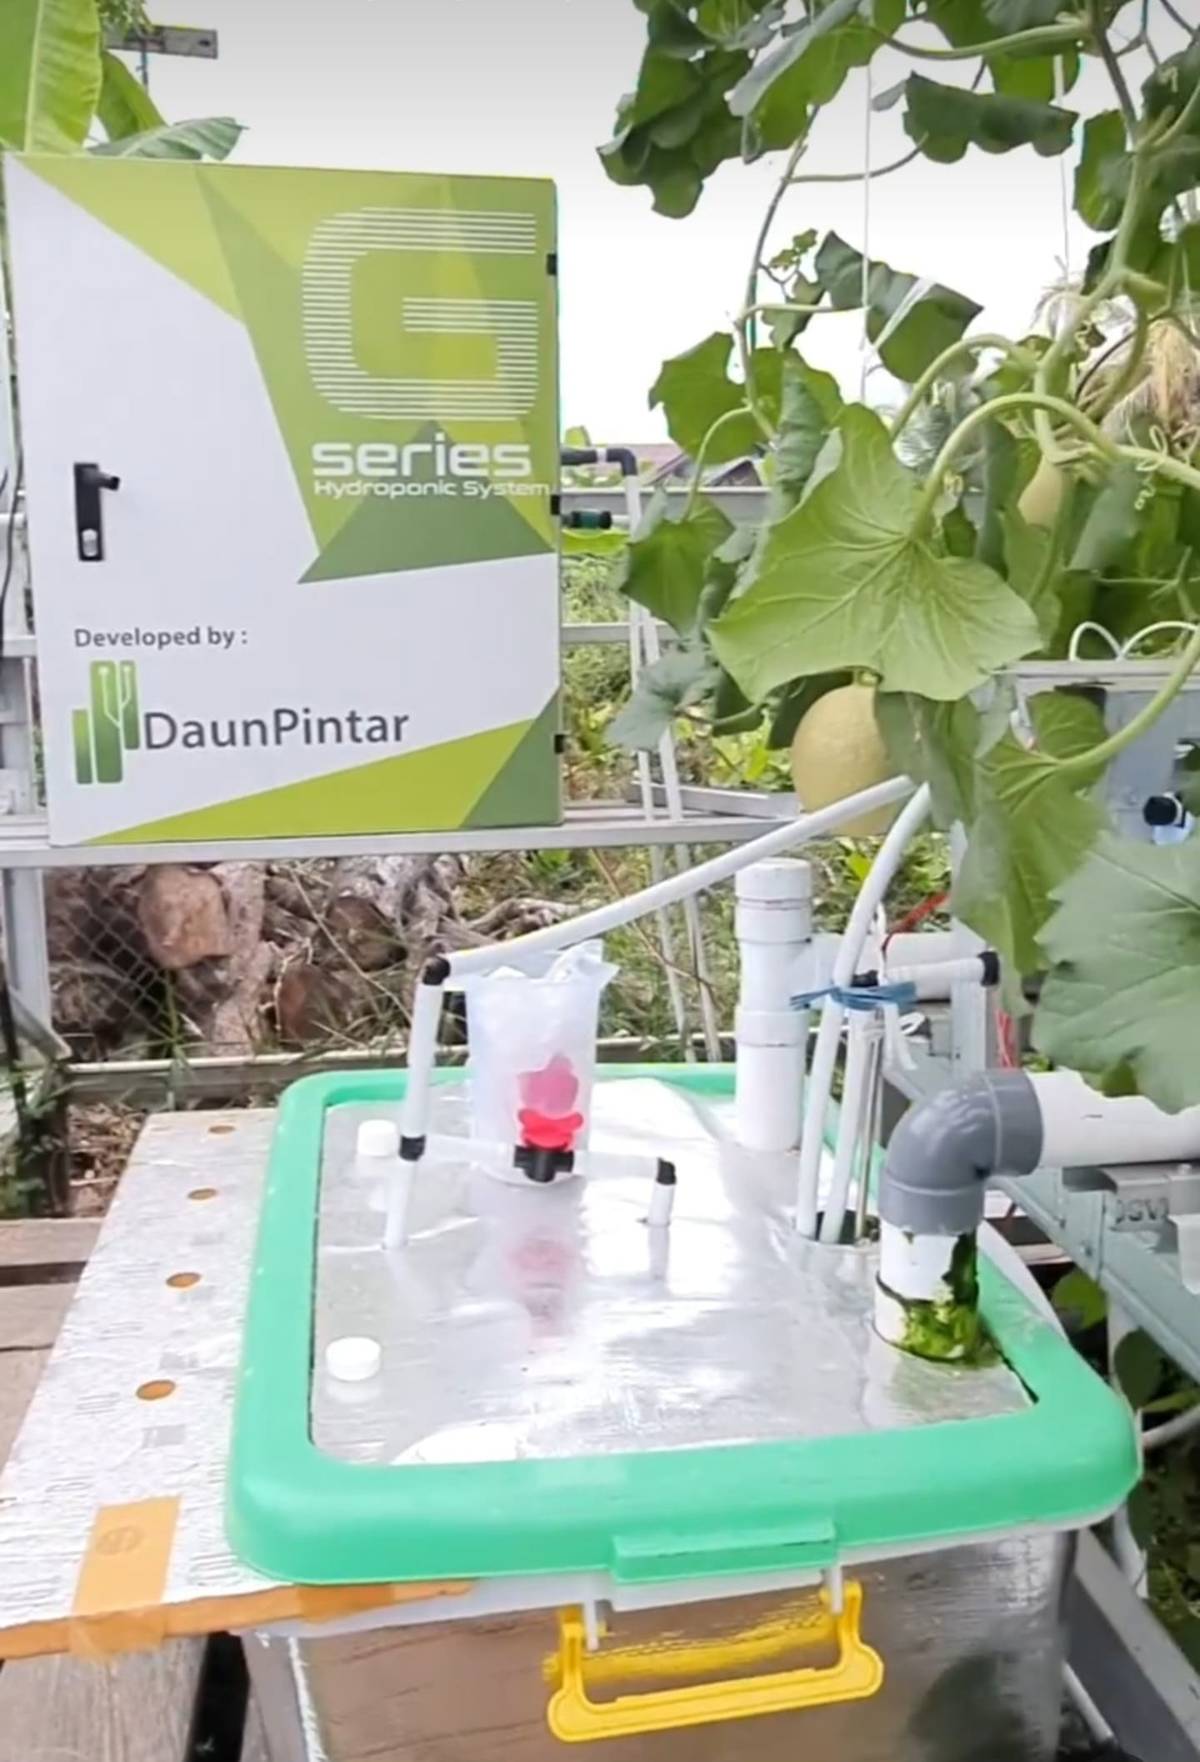 PT Daun Pintar Raya團隊為種植哈密瓜的客戶安裝產品。(臺科大提供)